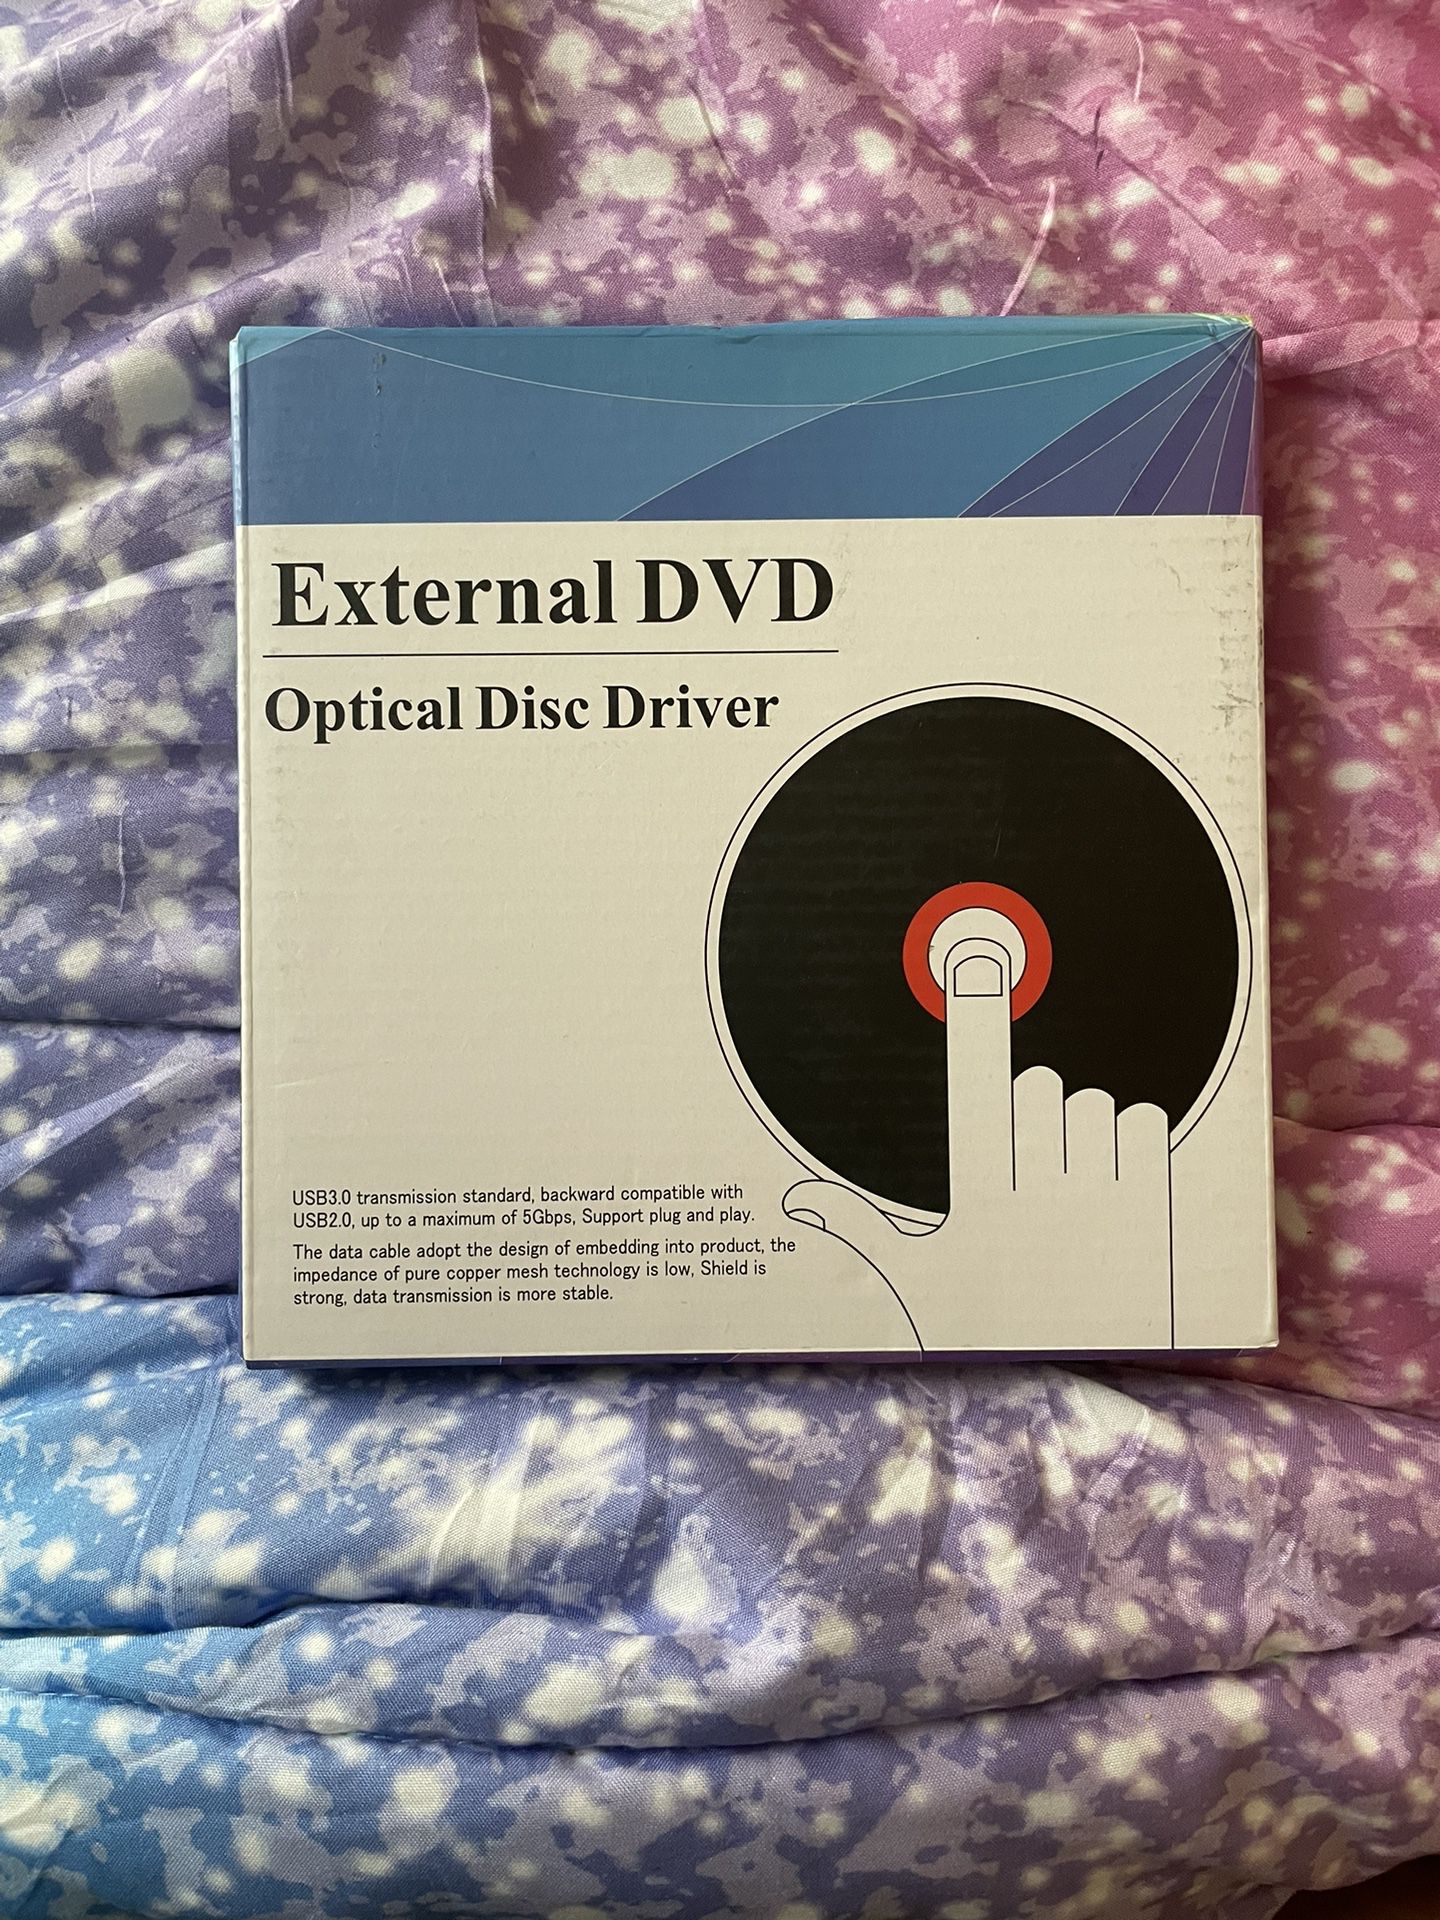 External DVD 